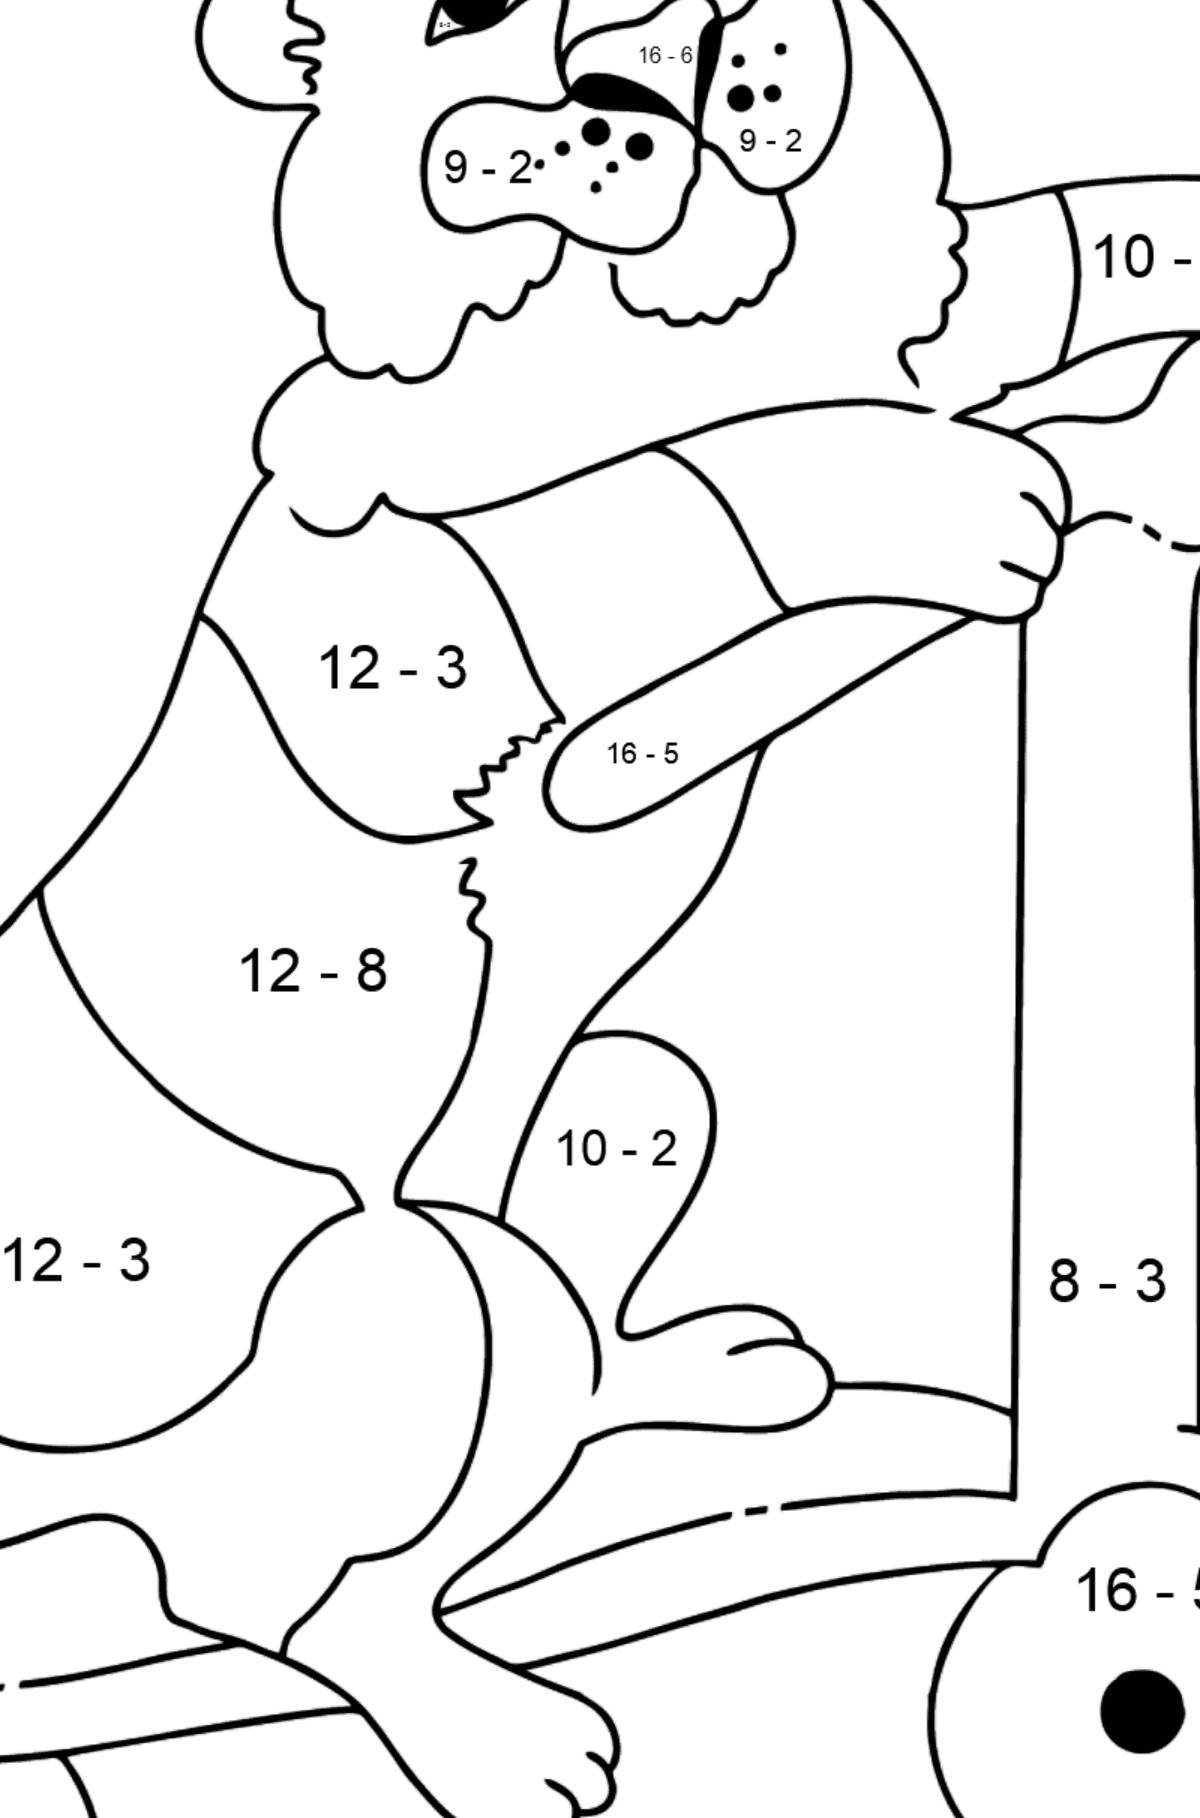 Disegno da colorare di Tigre dispettosa - Colorazione matematica - Sottrazione per bambini